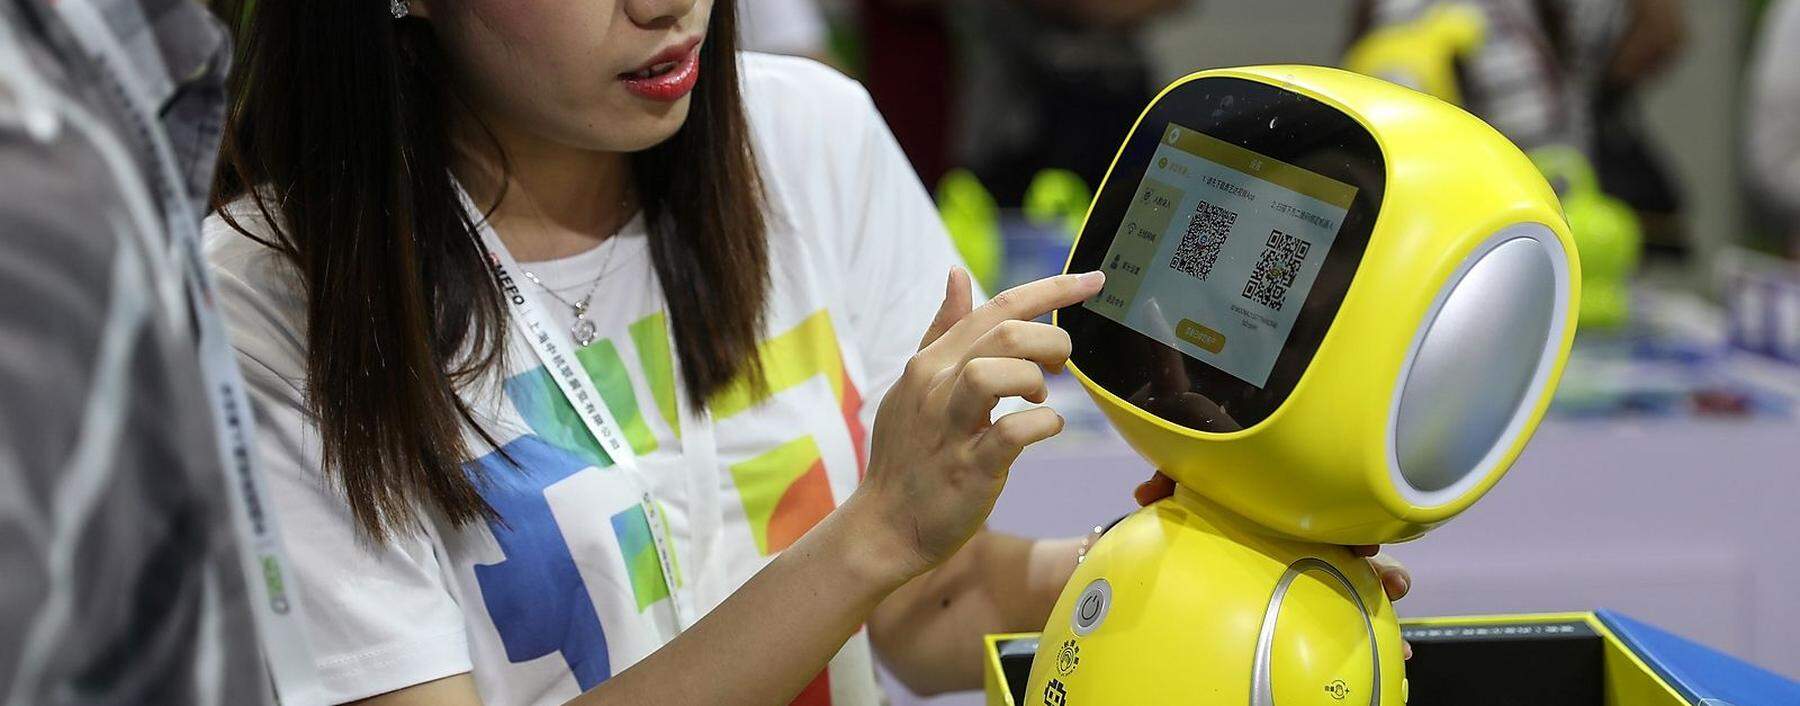 CHINA-TECHNOLOGY-ROBOT